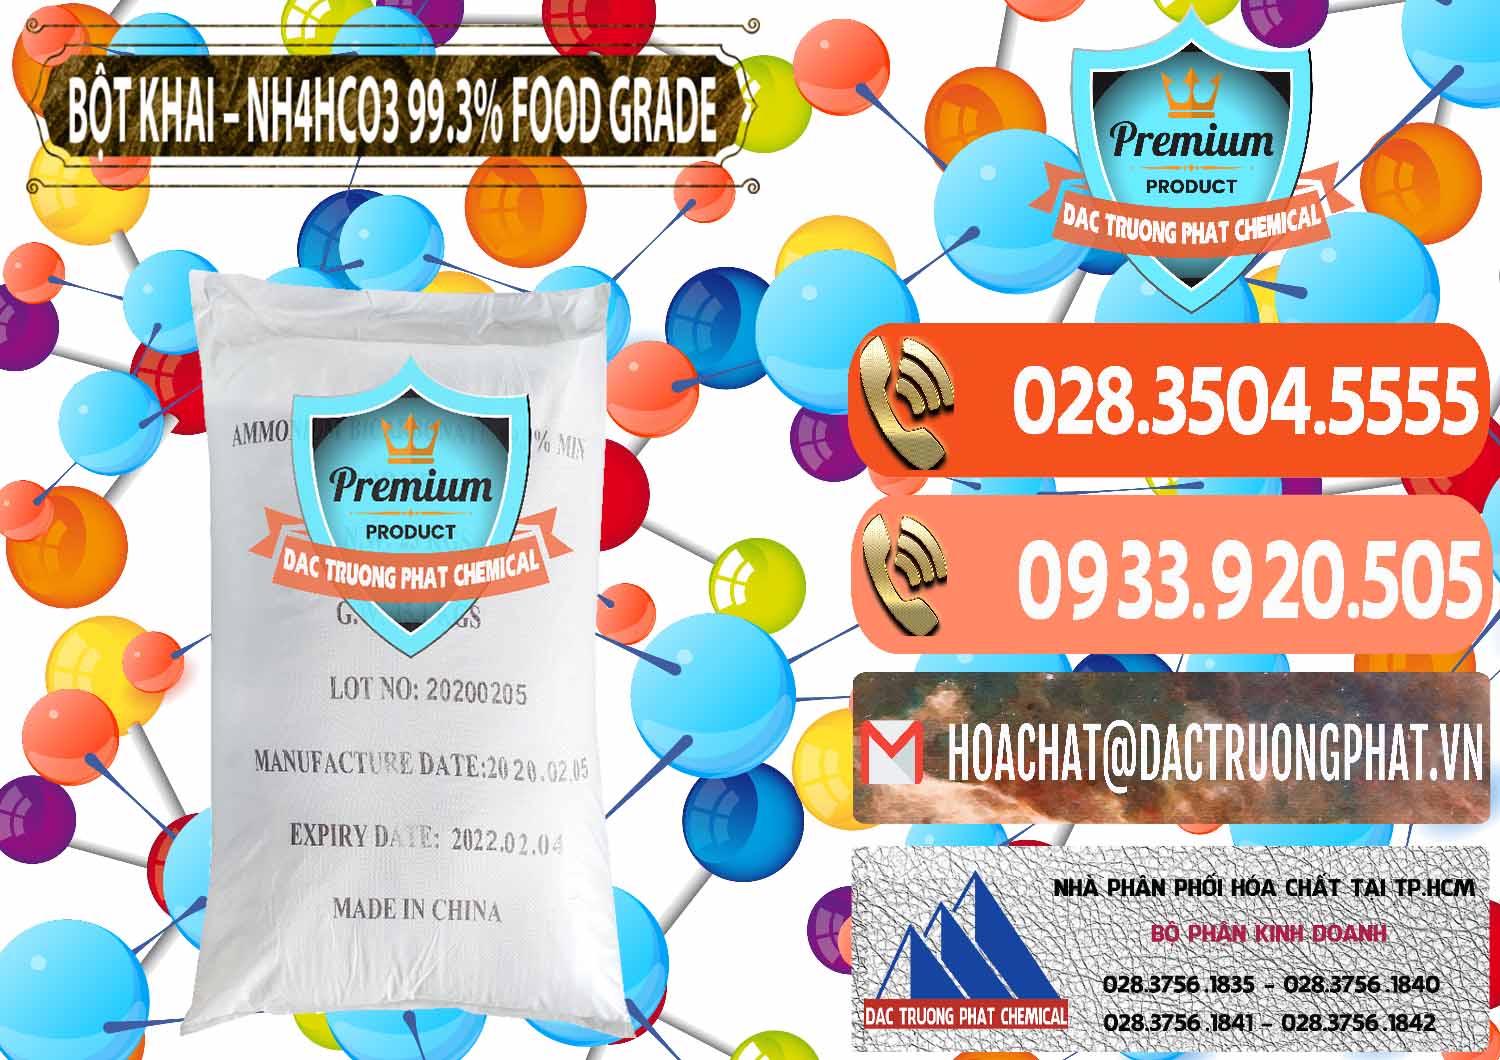 Cty chuyên cung cấp - bán Ammonium Bicarbonate – Bột Khai NH4HCO3 Food Grade Trung Quốc China - 0019 - Công ty chuyên kinh doanh & cung cấp hóa chất tại TP.HCM - hoachatmientay.com